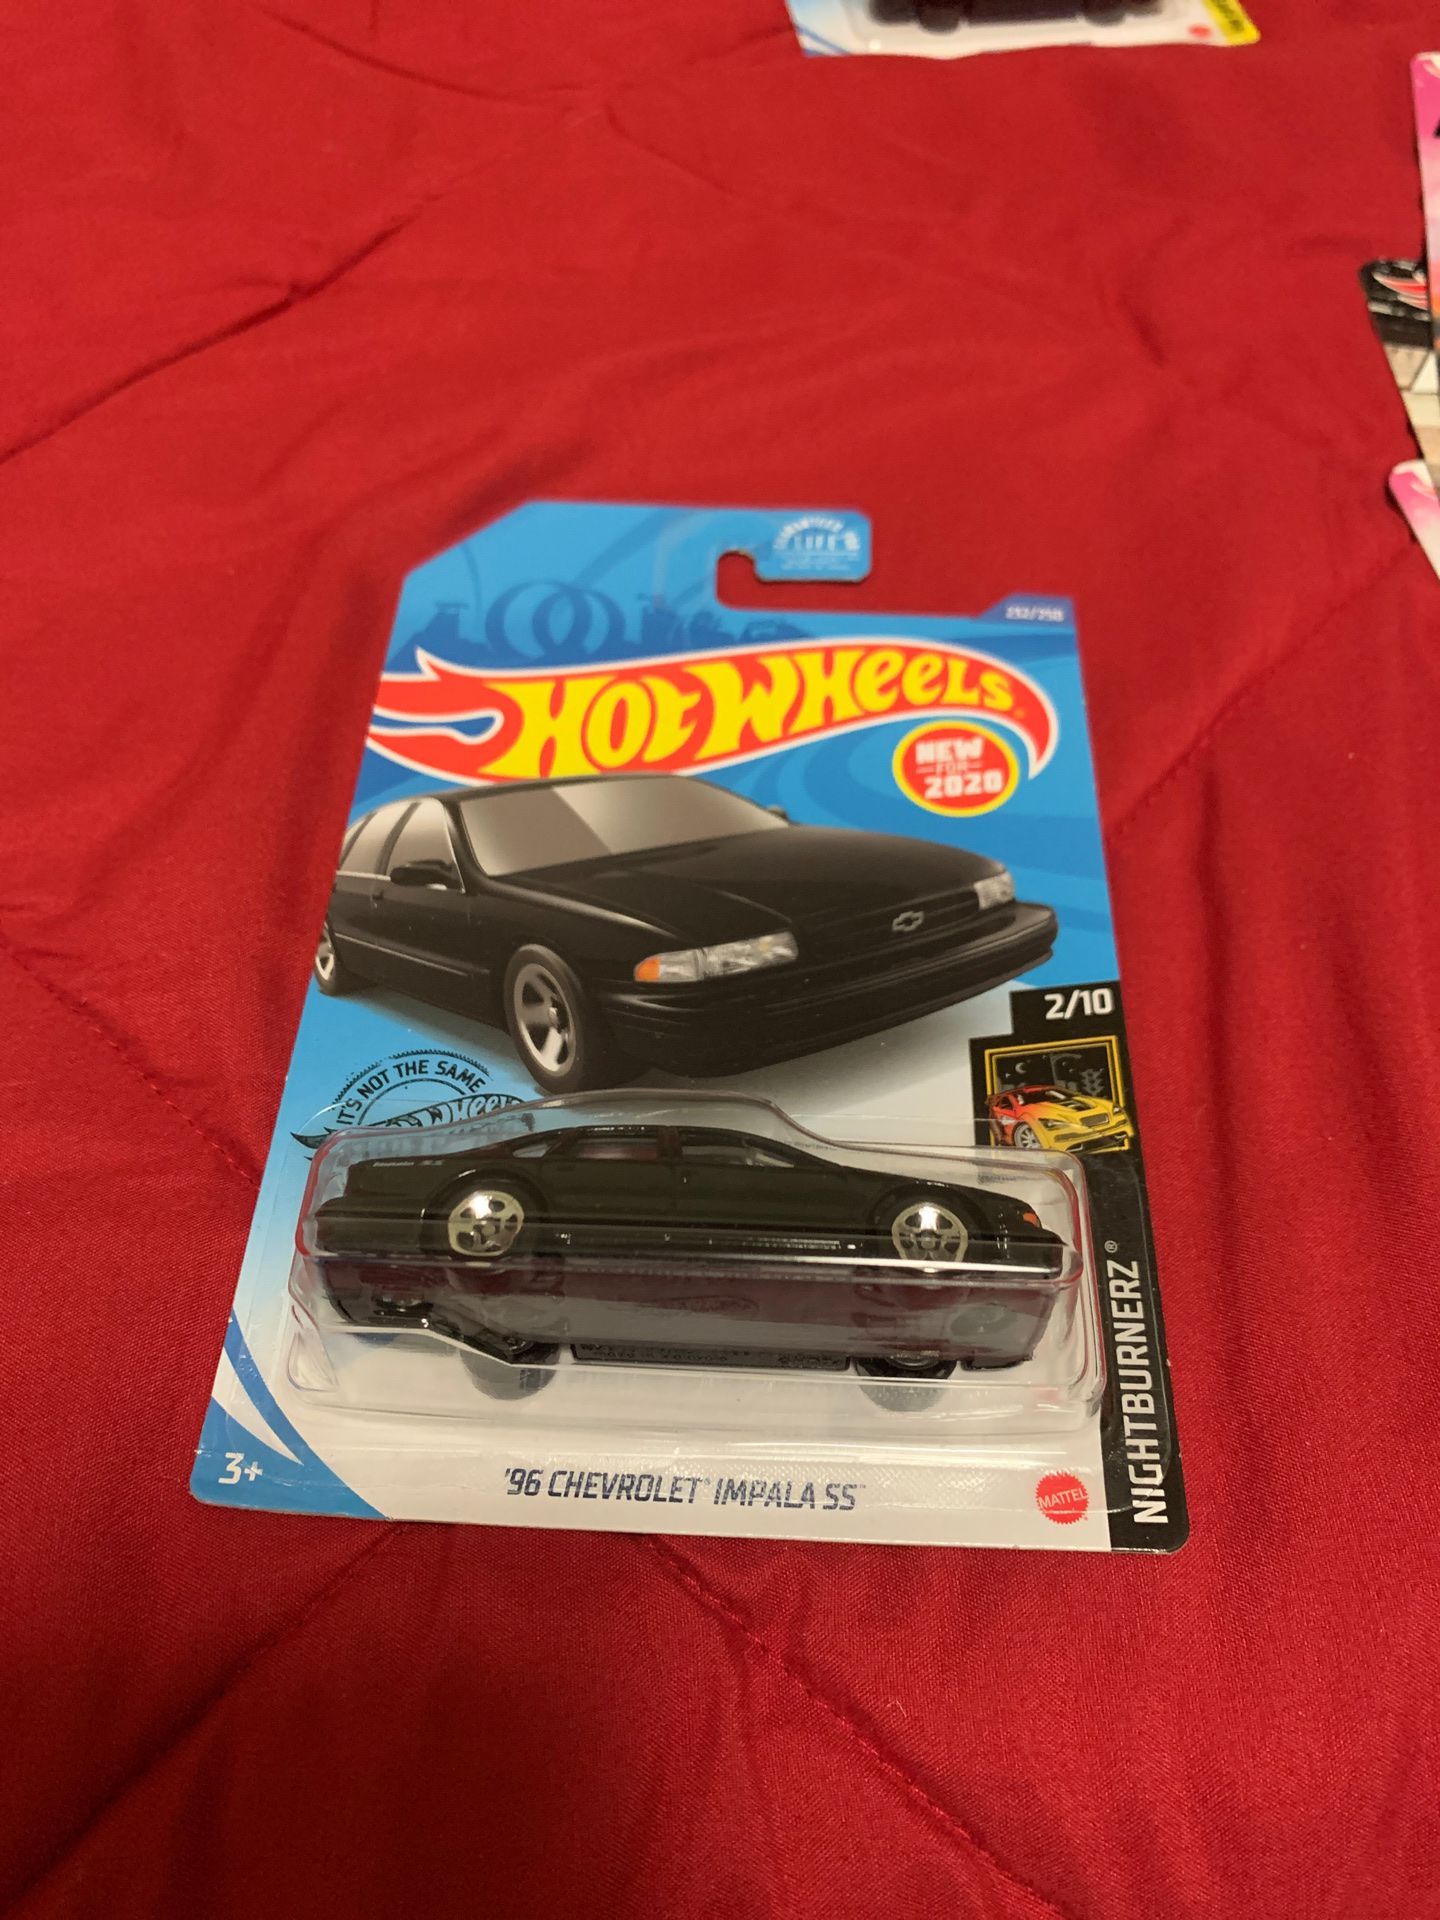 96 Chevrolet impala SS hot wheel